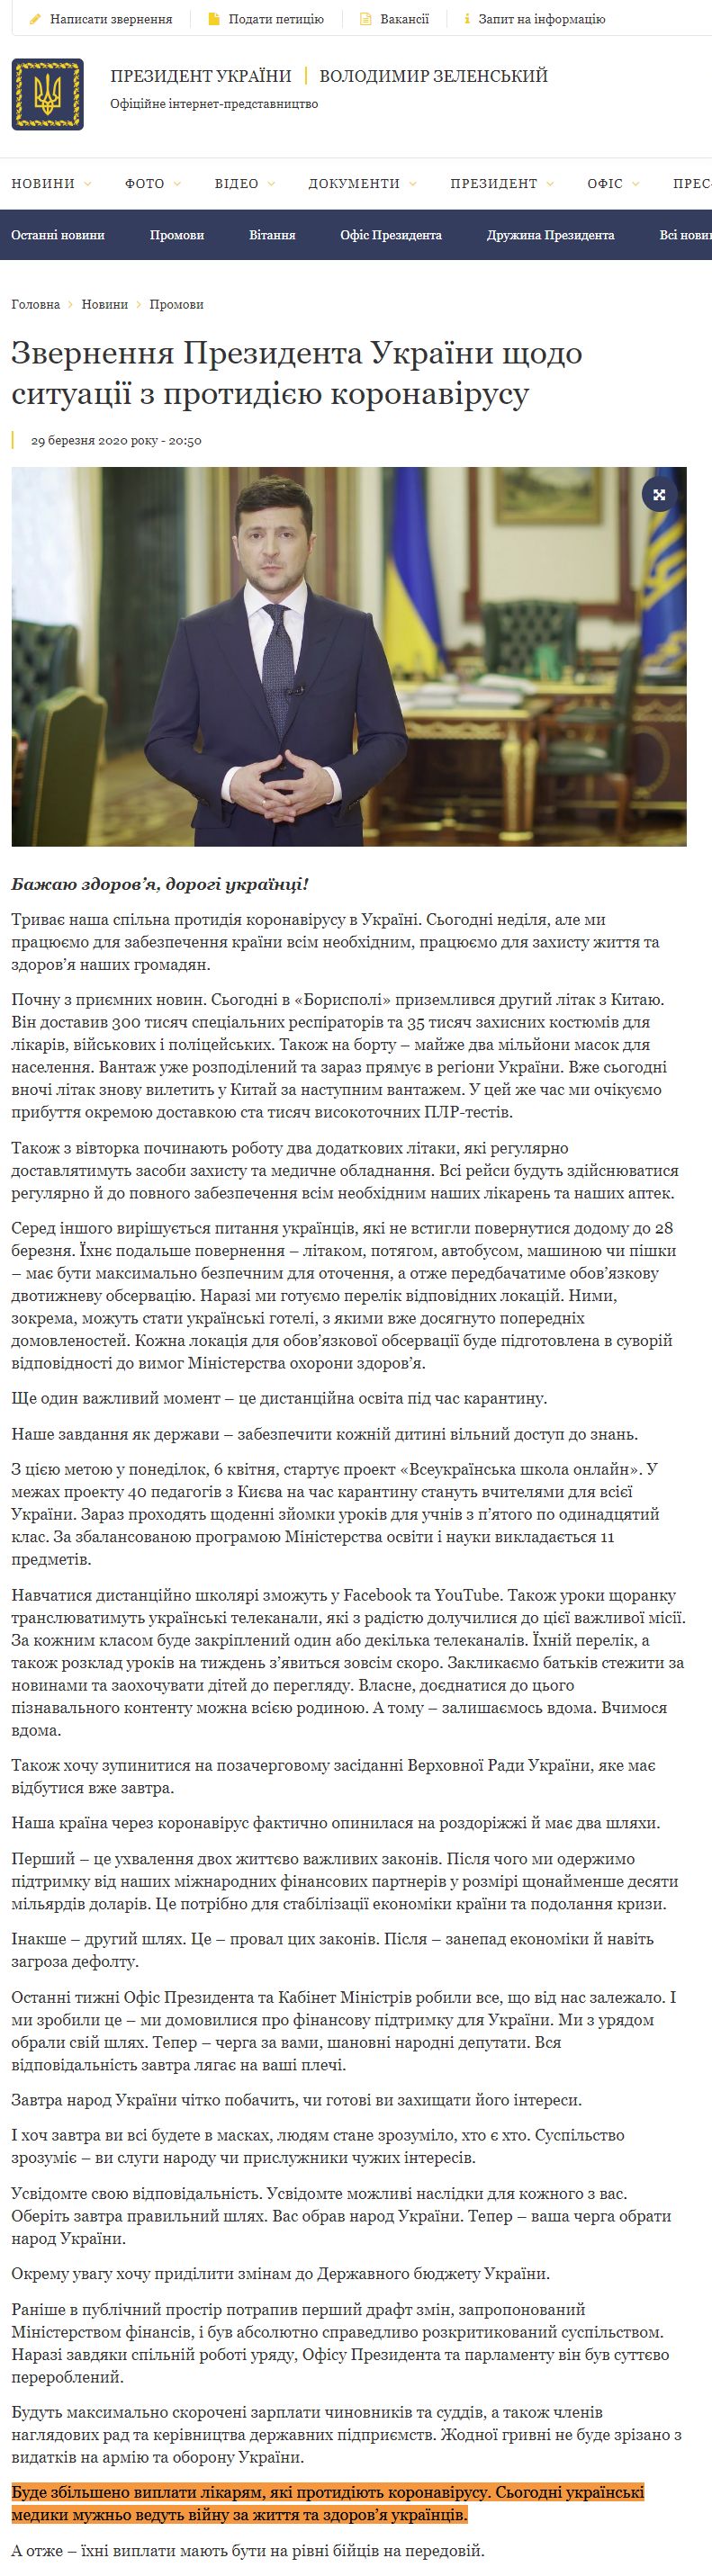 https://www.president.gov.ua/news/zvernennya-prezidenta-ukrayini-shodo-situaciyi-z-protidiyeyu-60373